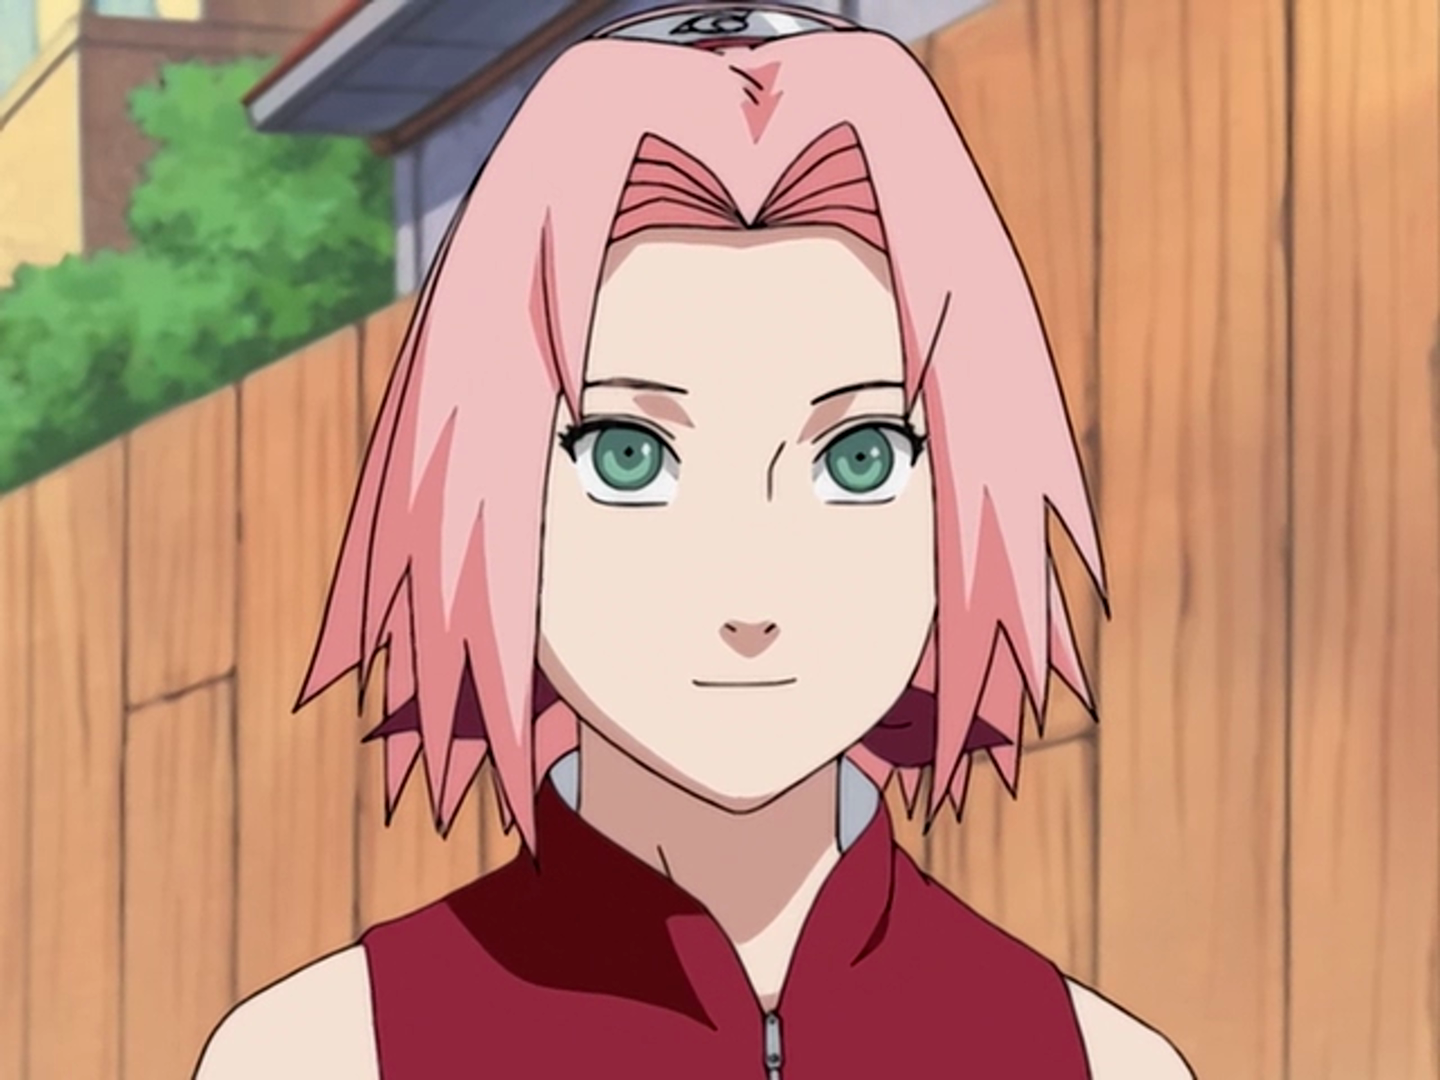 1. Sakura Haruno from Naruto - wide 2